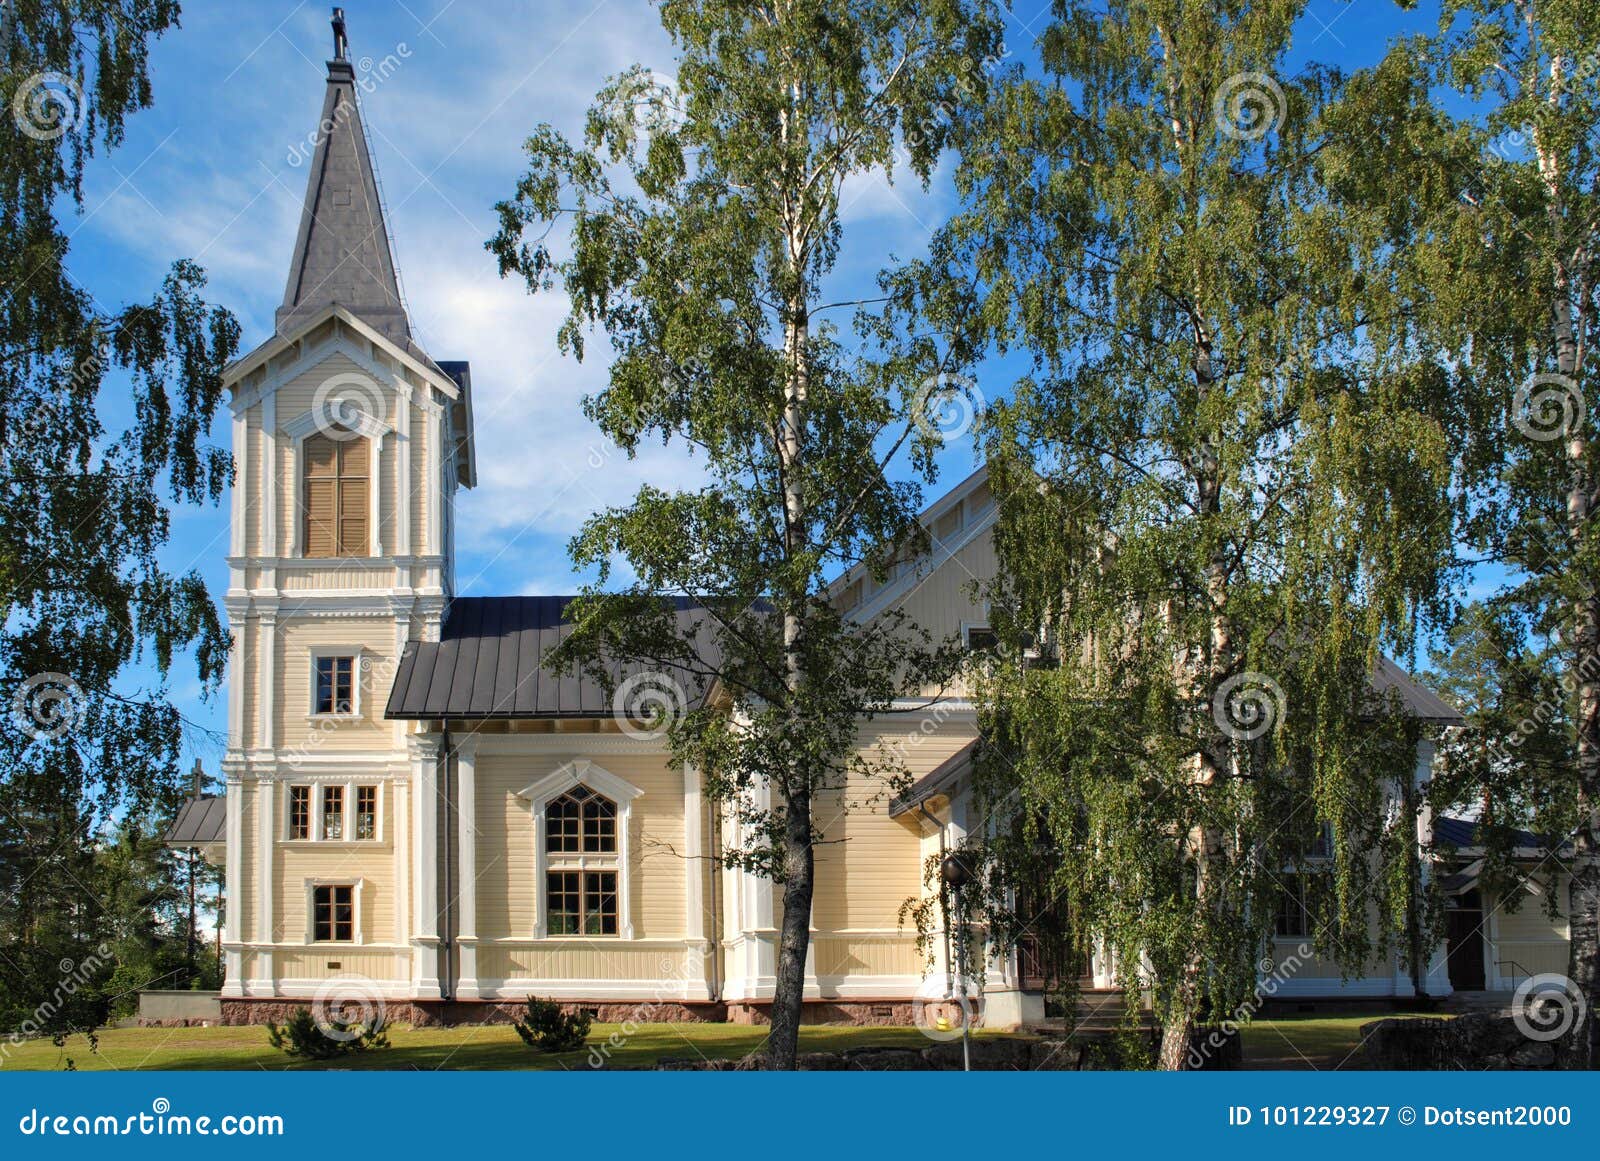 the liljendals kyrka.